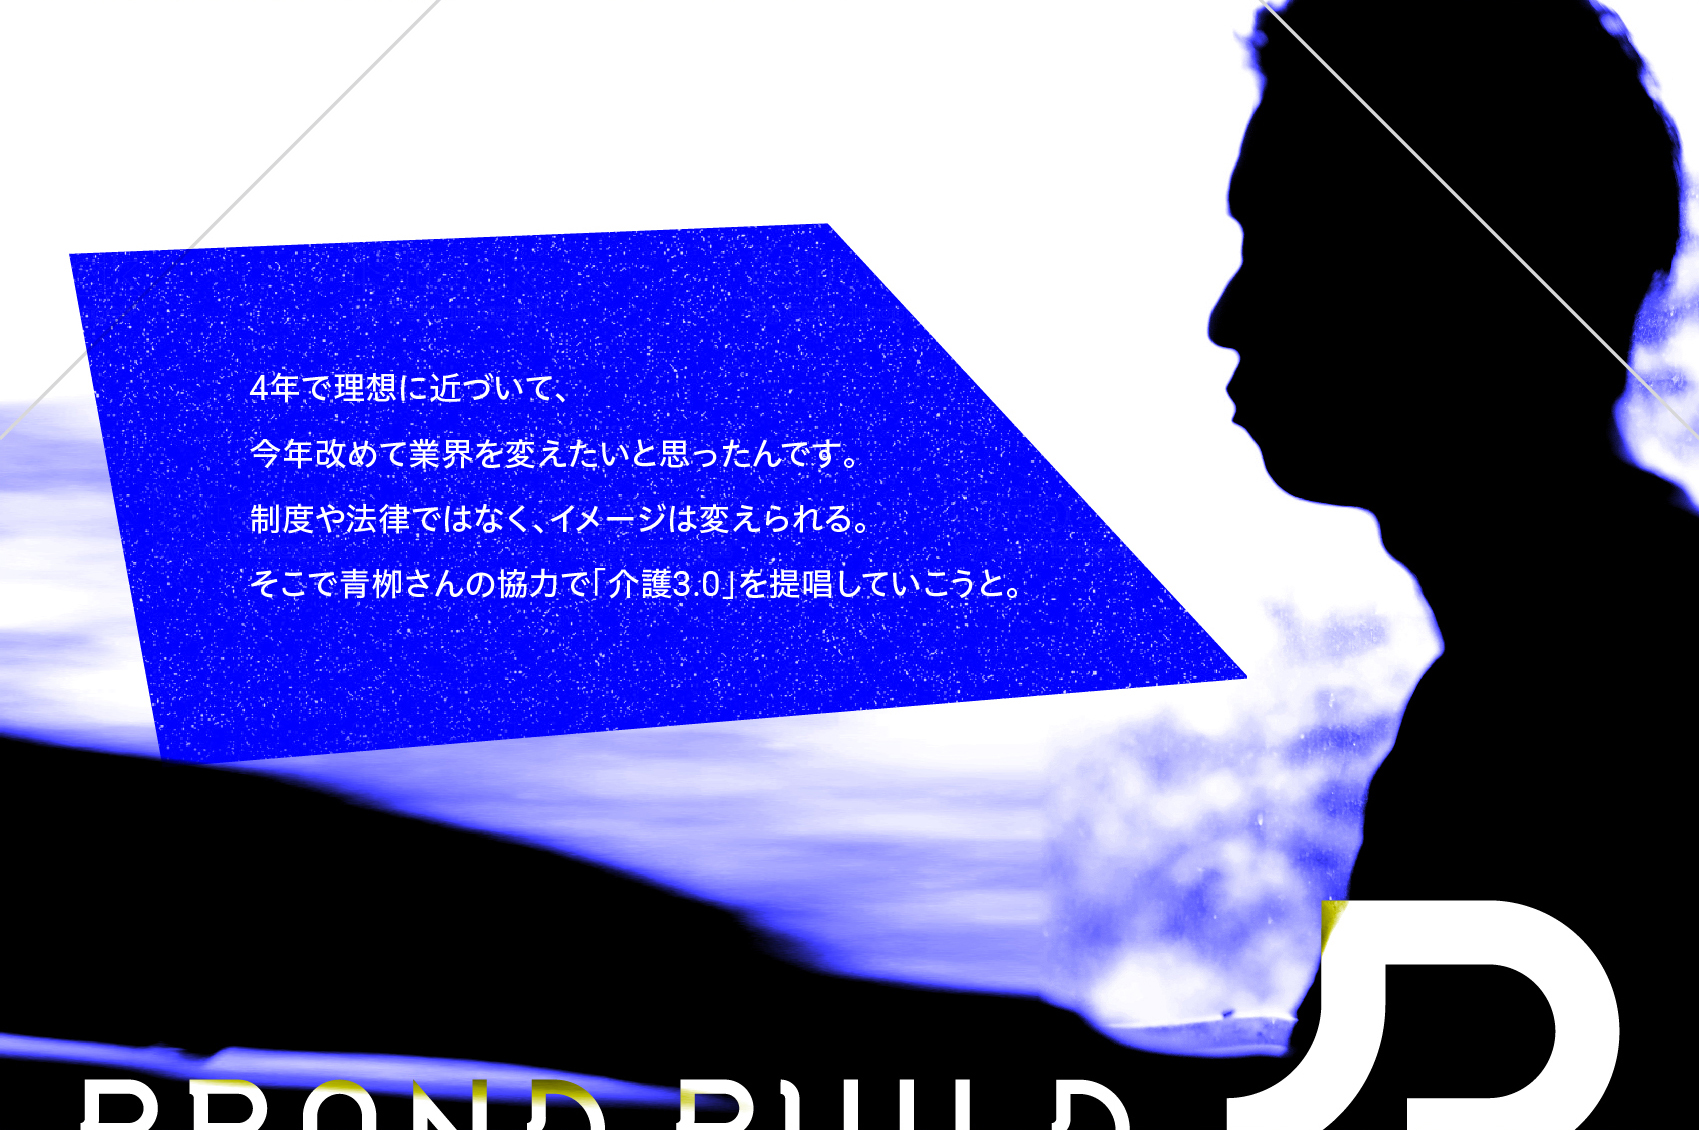 BRAND BUILD｜とちぎ朝日紙面でのブランディングインタビュー連載